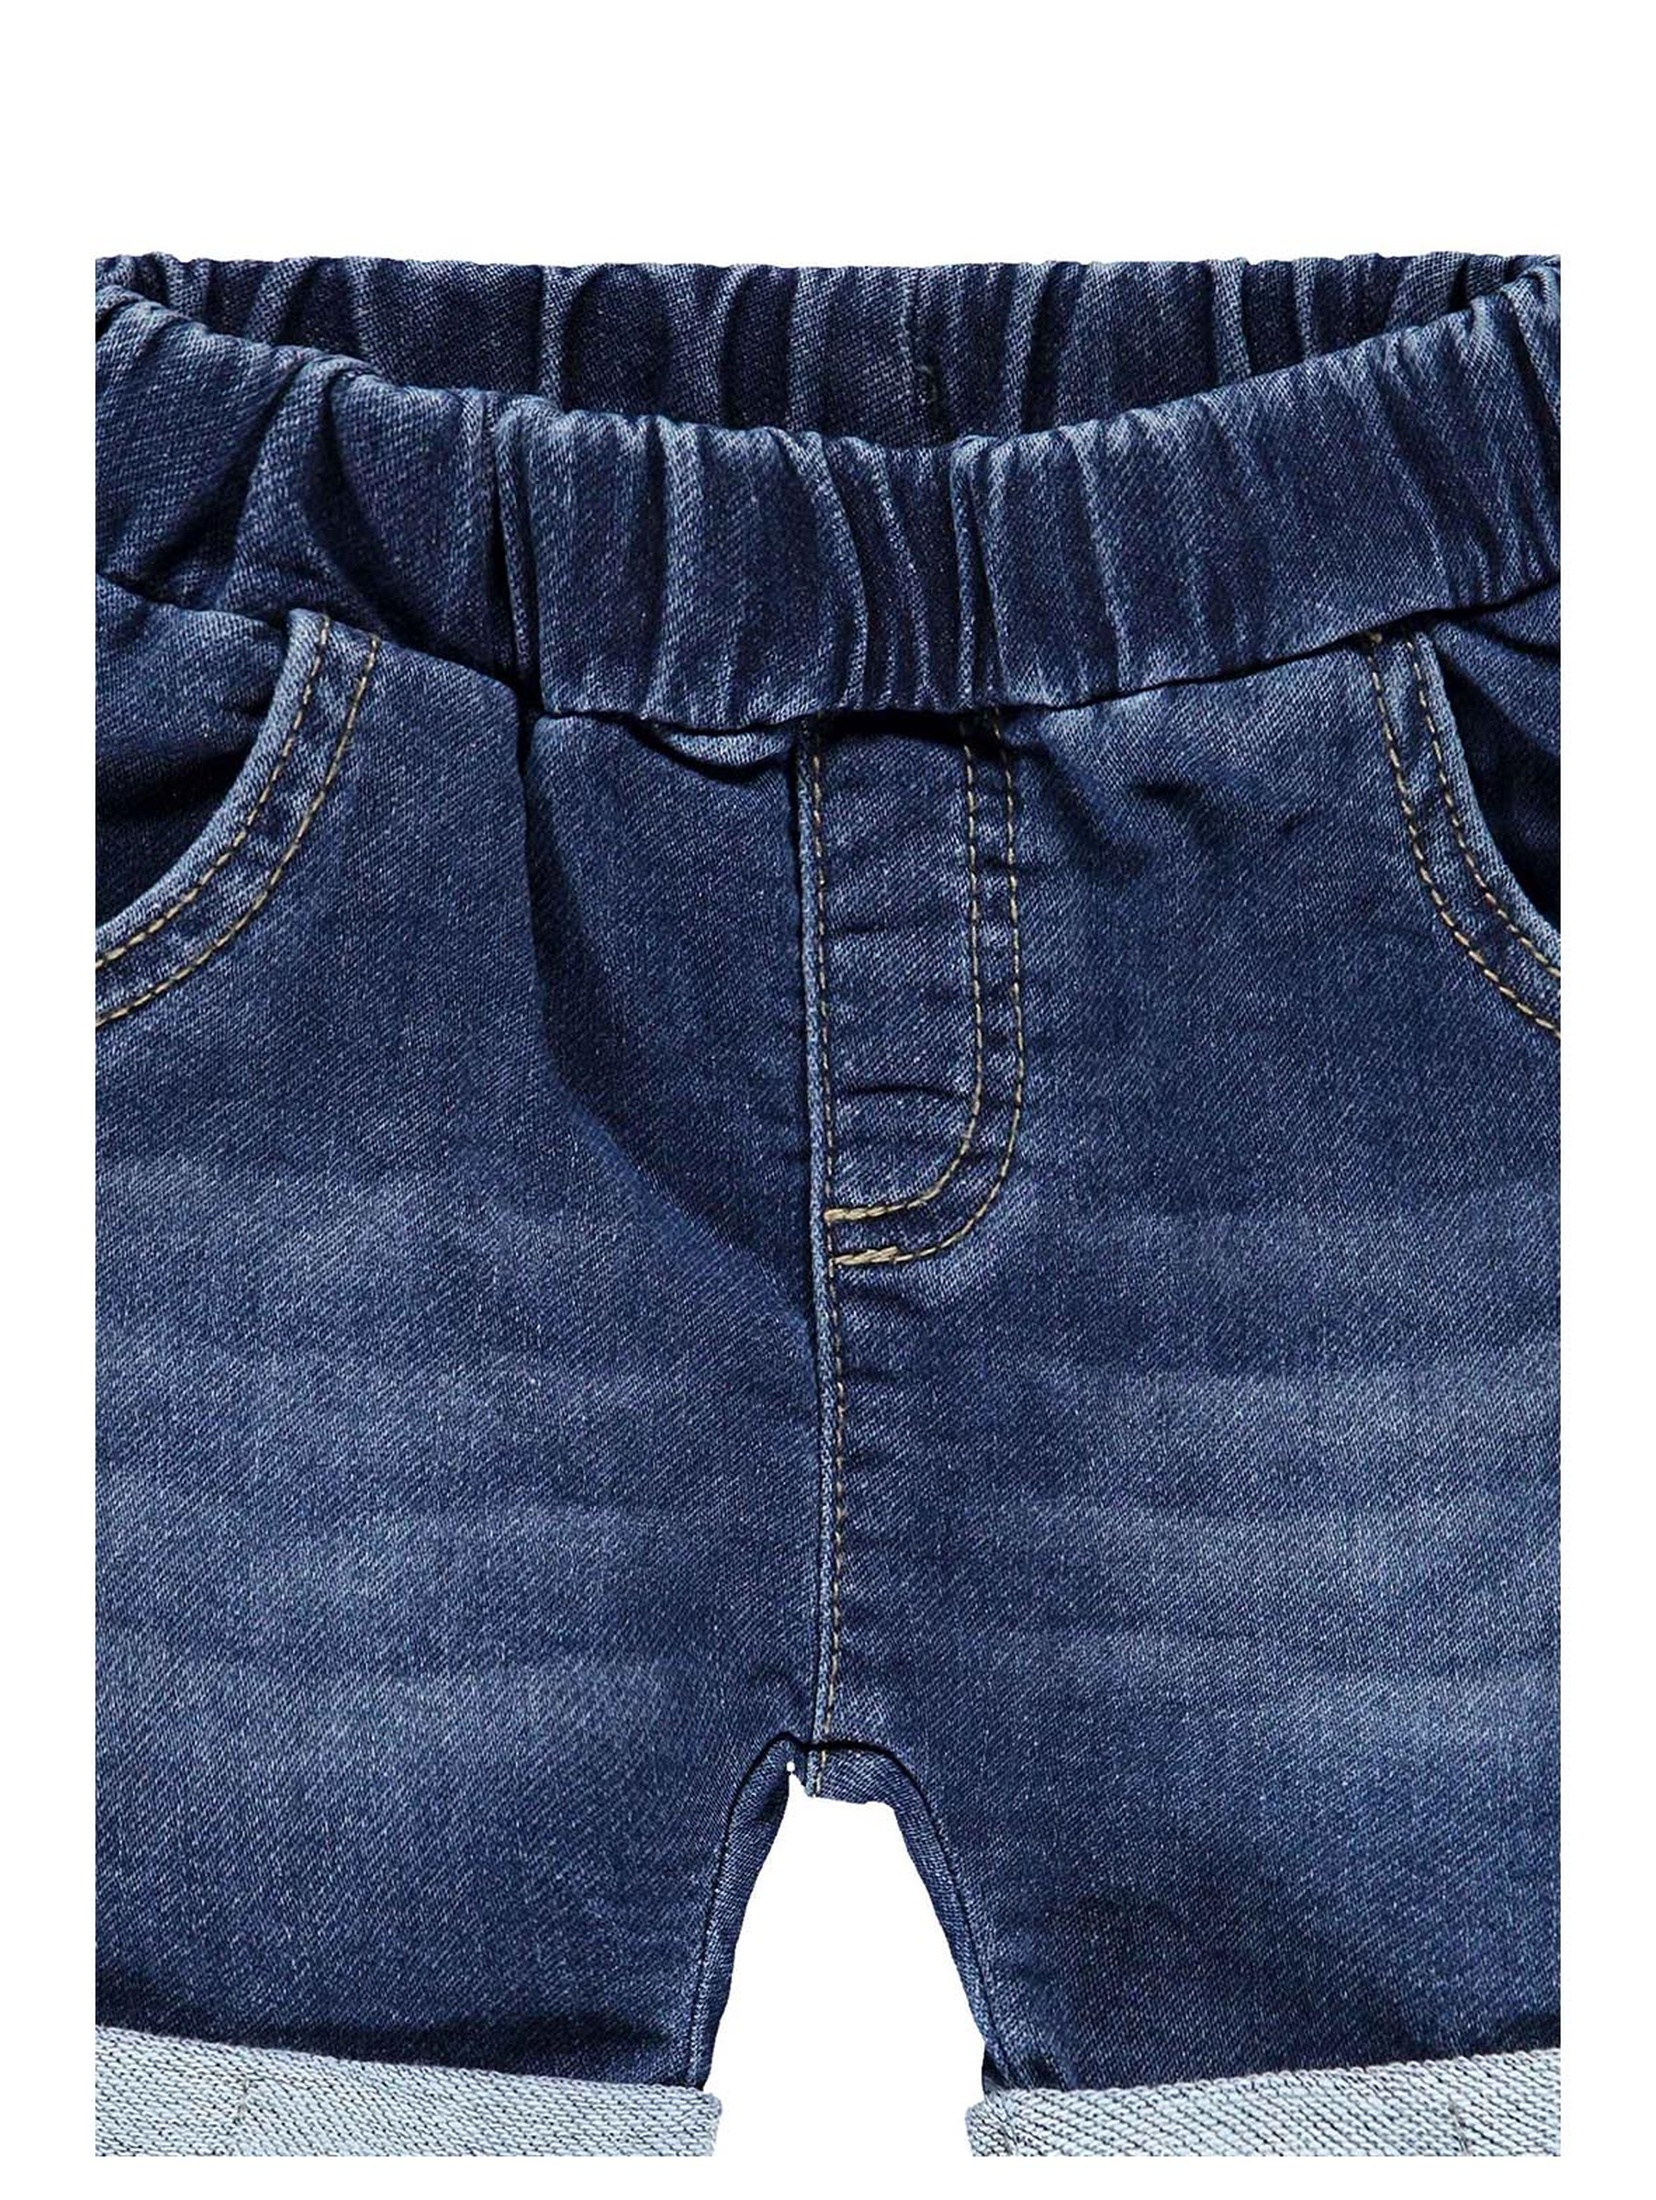 Spodenki krótkie jeansowe dziewczęce, niebieskie, Bellybutton